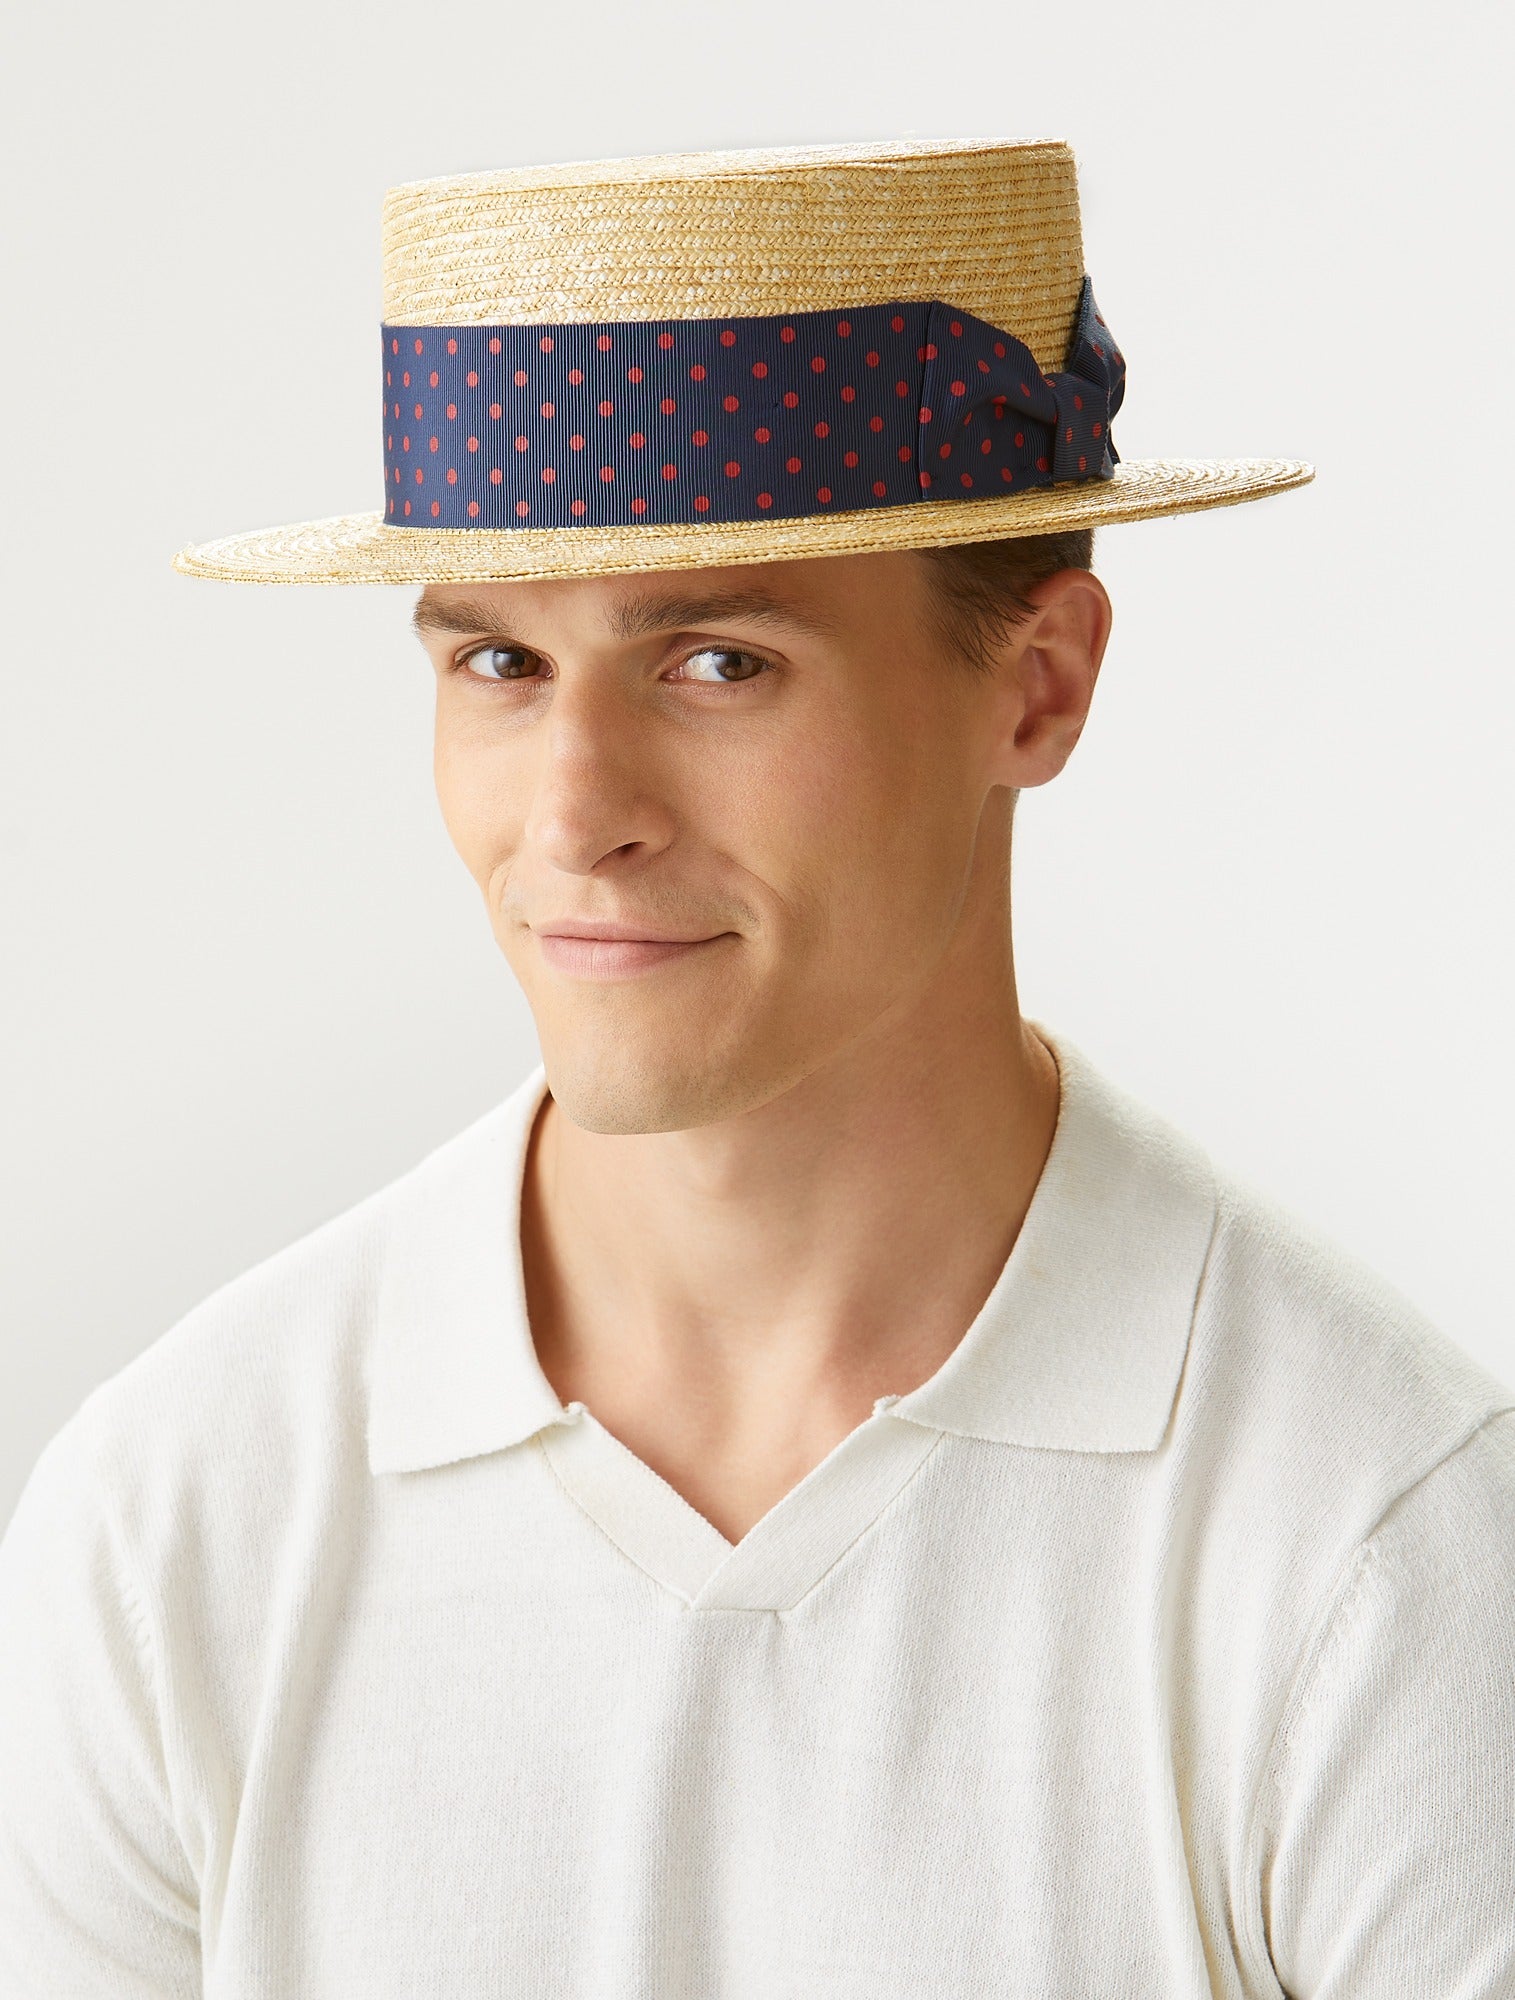 Oxford Boater - Men's Hats - Lock & Co. Hatters London UK